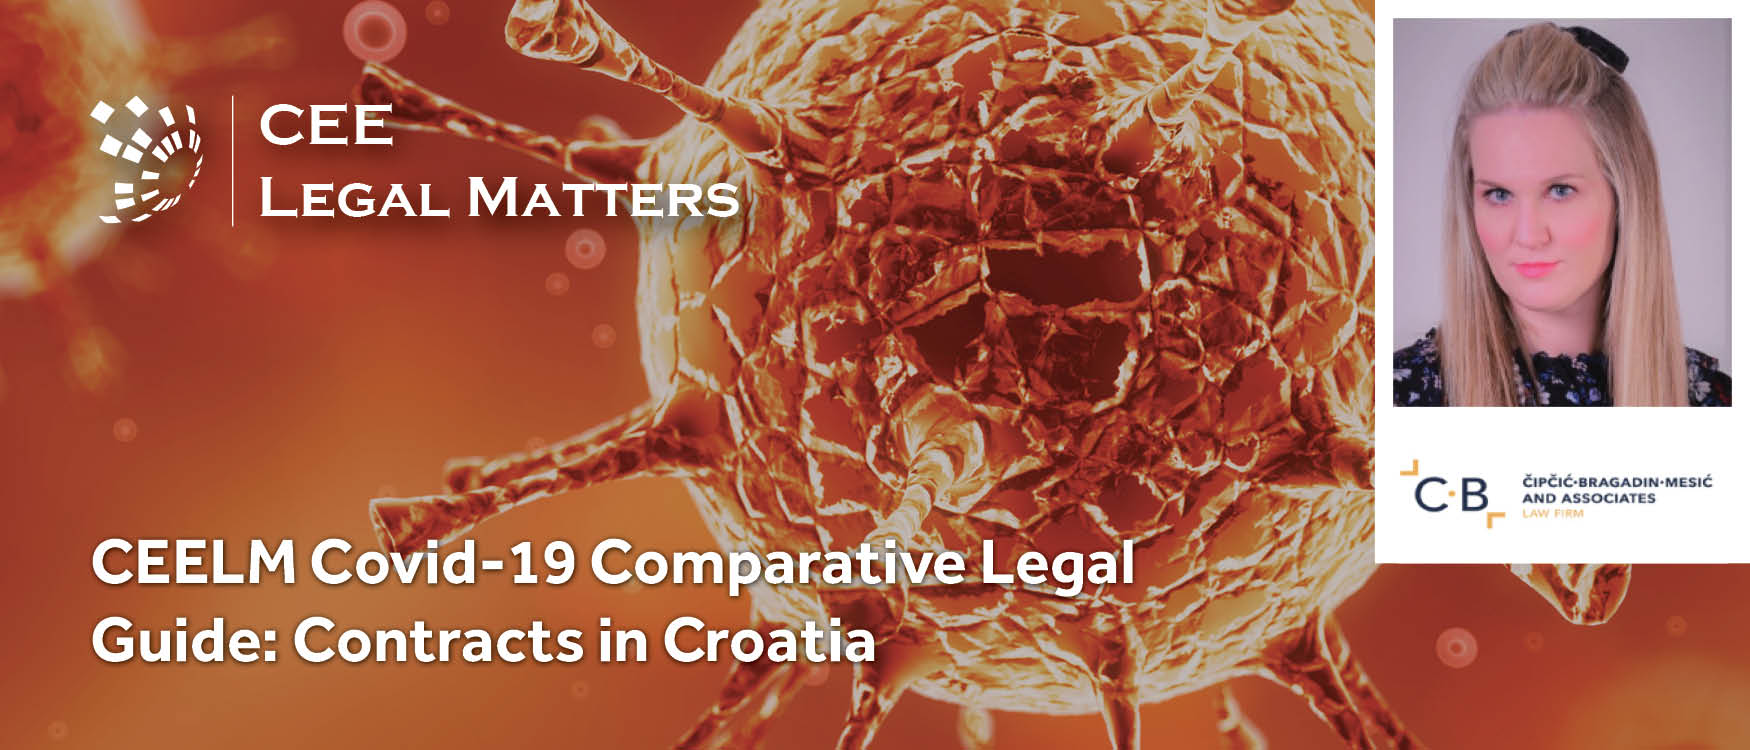 CEELM Covid-19 Comparative Legal Guide: Contracts in Croatia